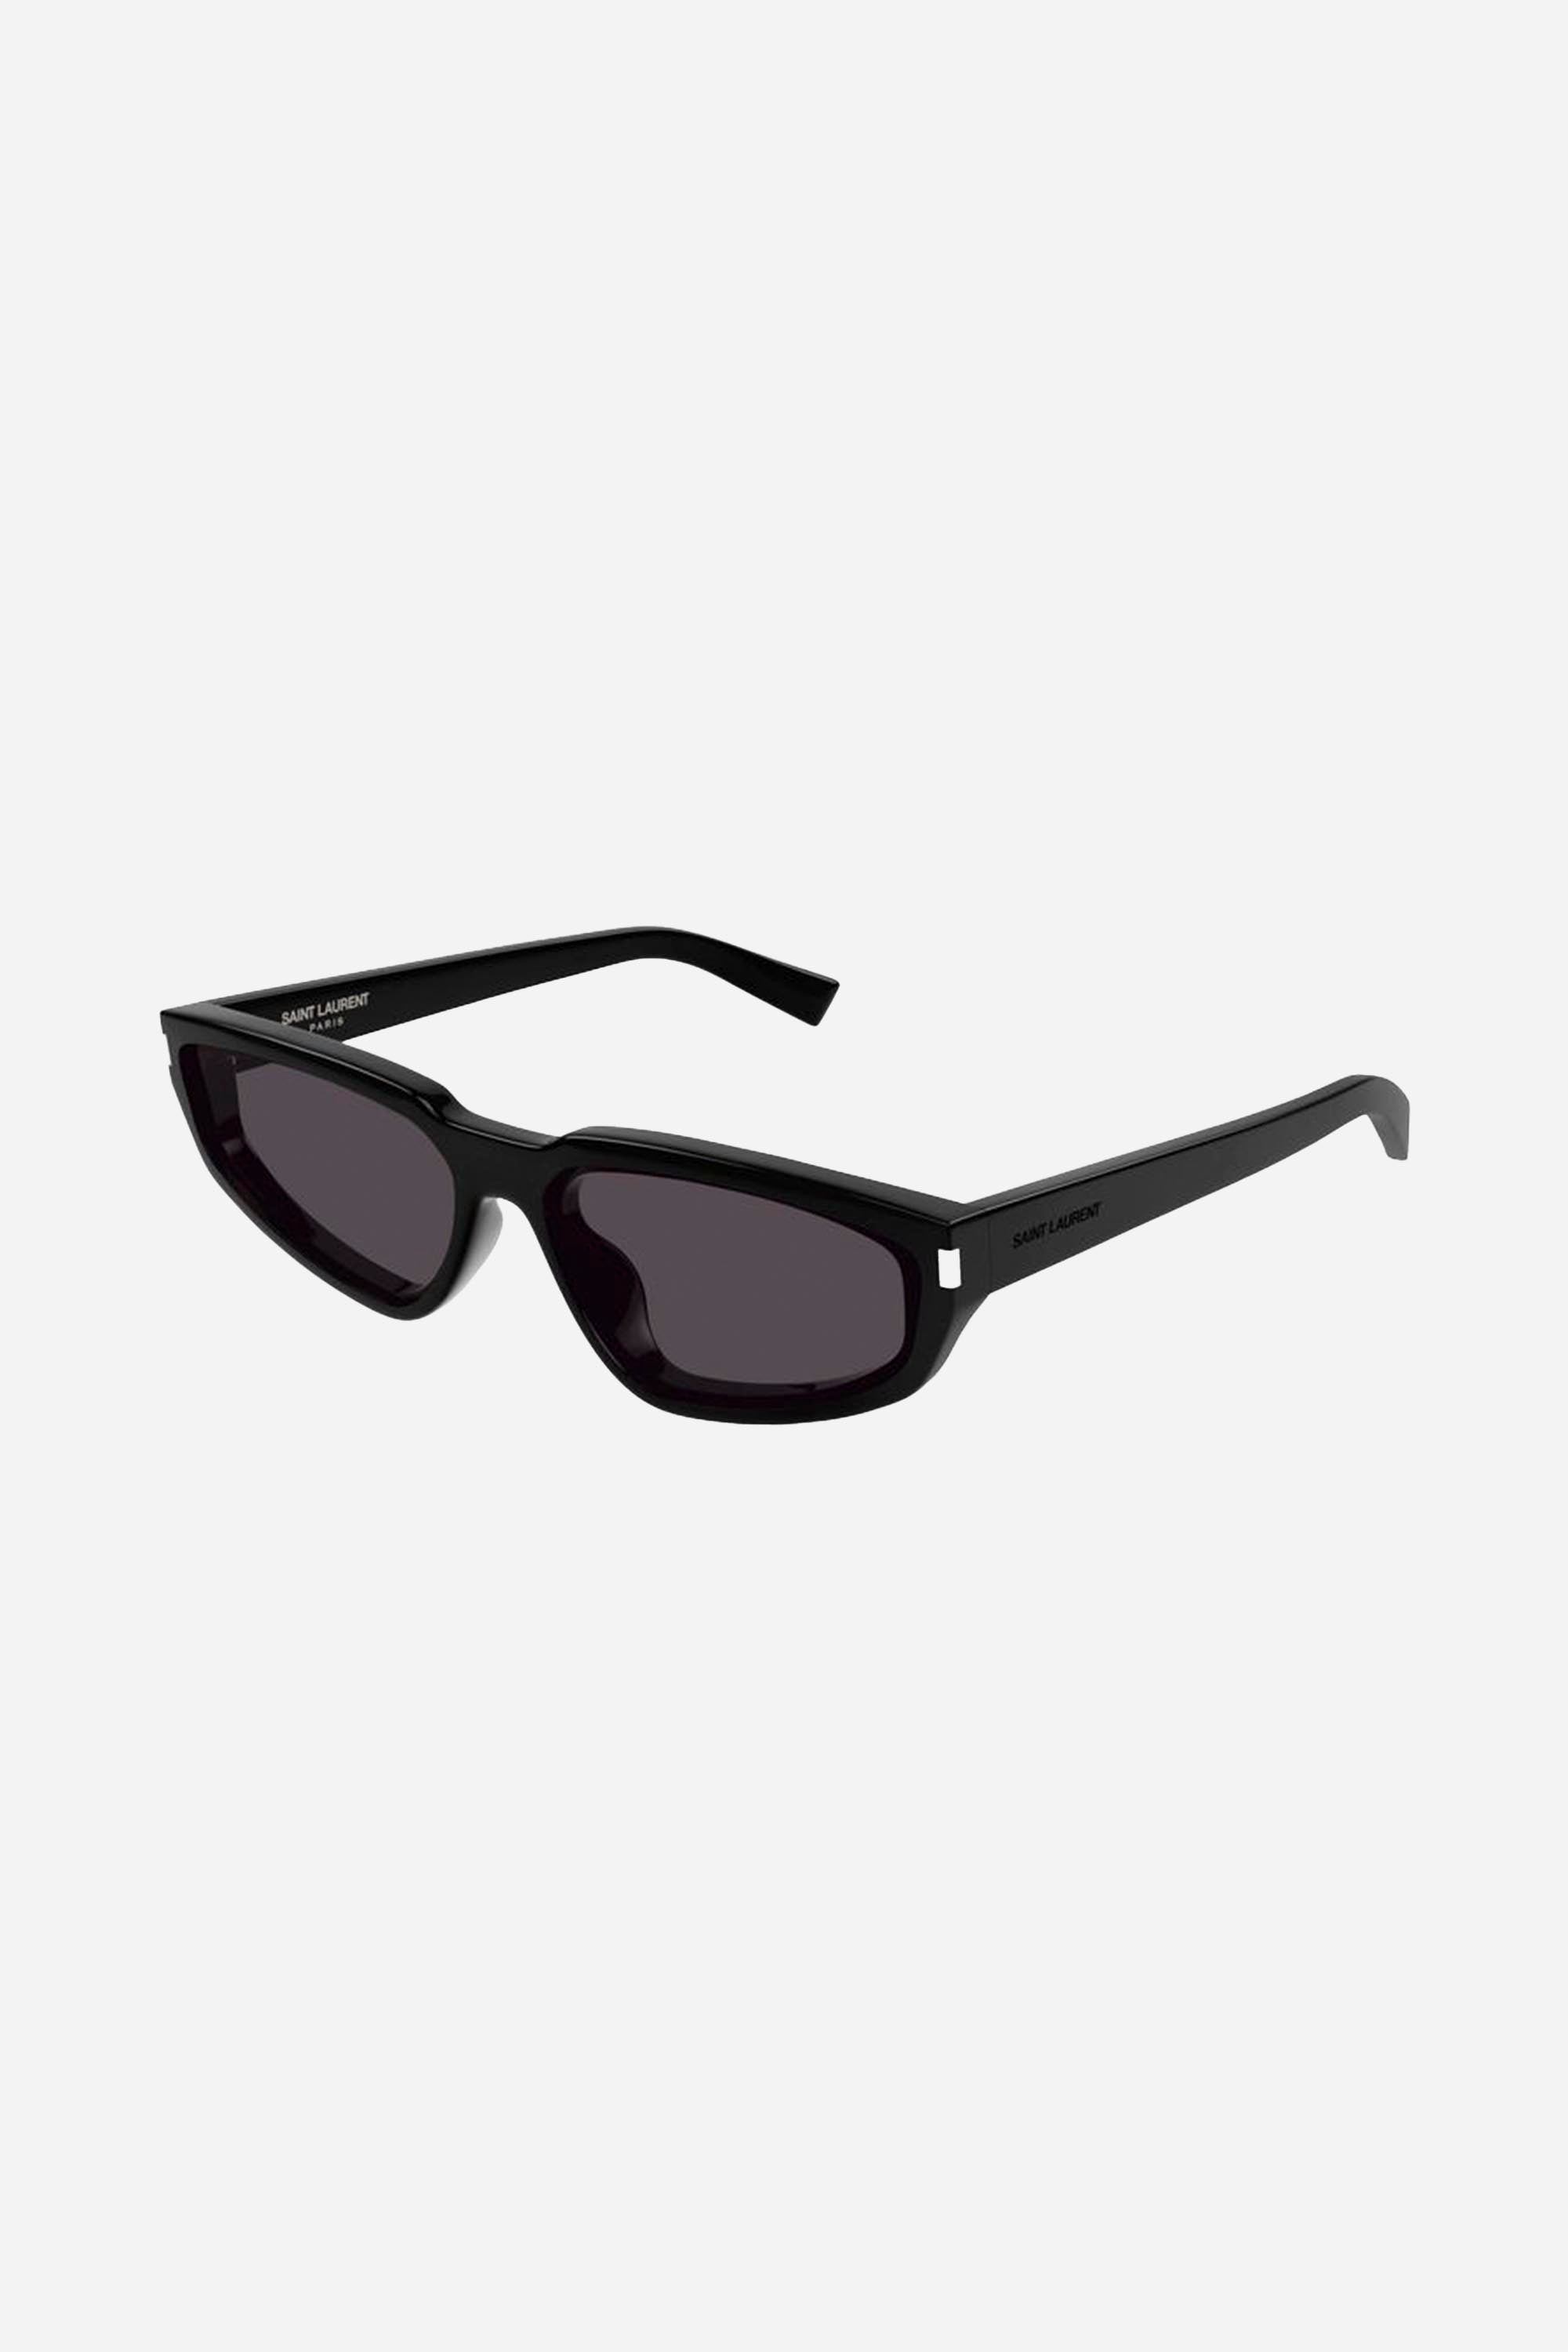 Saint Laurent SL 634 NOVA oval black sunglasses - Eyewear Club